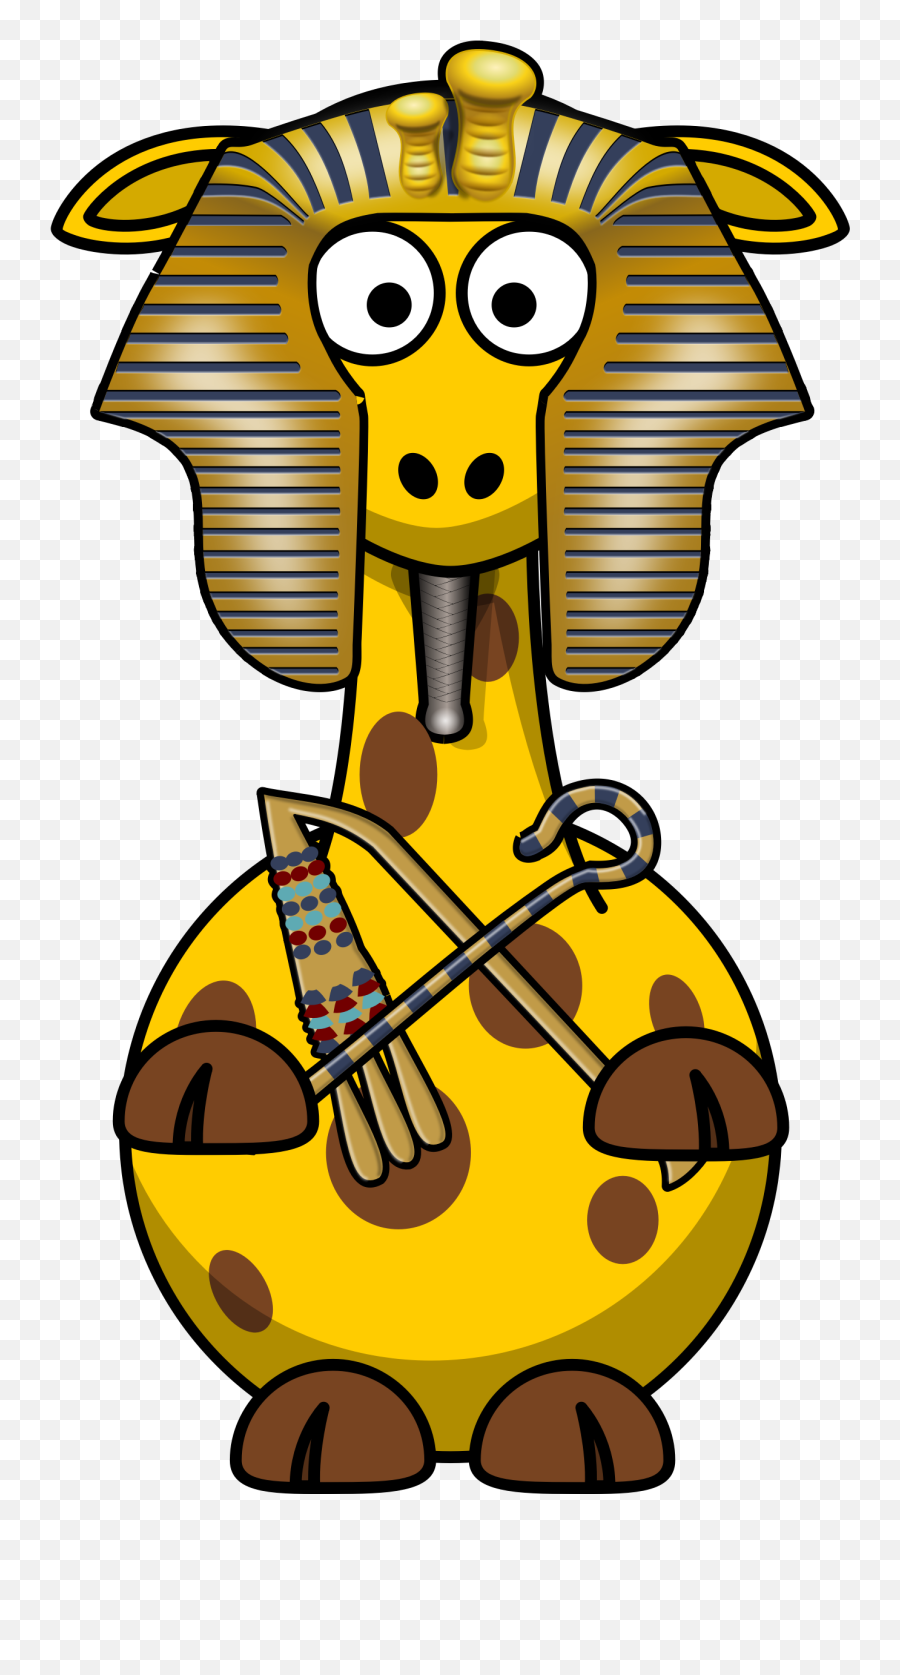 Egypt Clipart Pharo Egypt Pharo Transparent Free For - Cartoon Giraffe Clipart Emoji,Egyptian Emoji